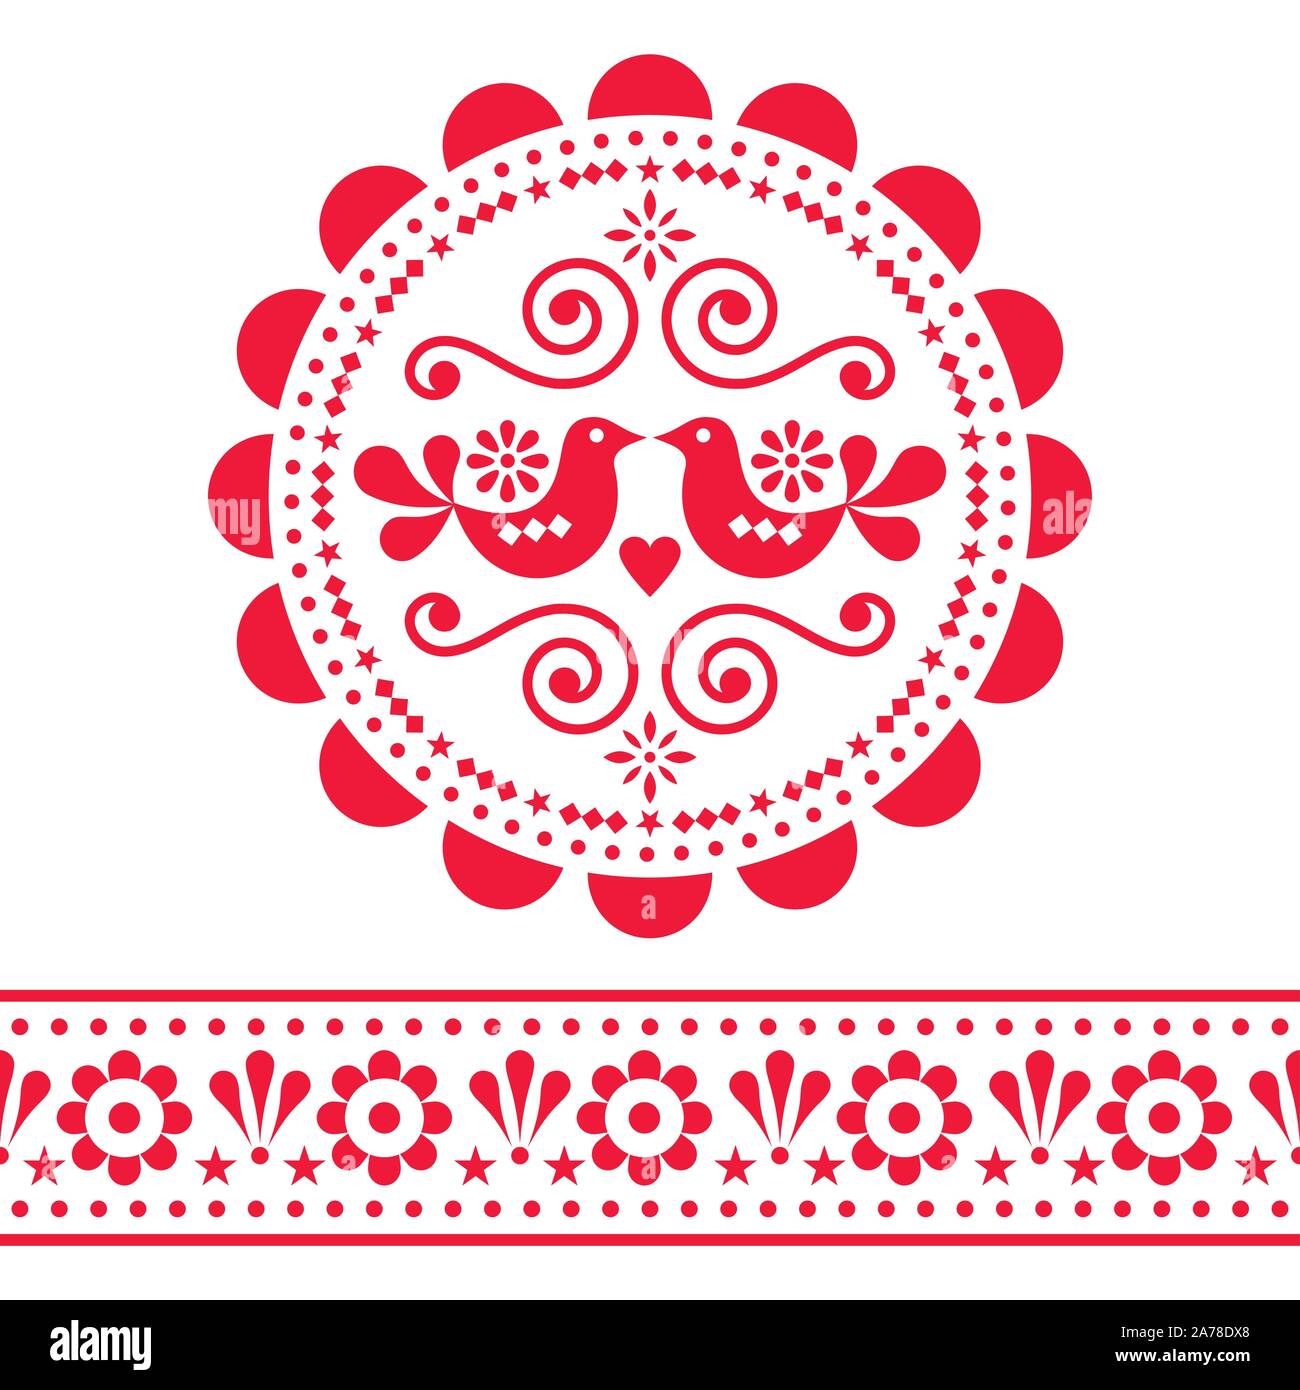 Scandinavian folk vektor design pattern - runde und nahtloses Design, cute floralen Ornament mit Vögeln in rot auf weißem Hintergrund Stock Vektor